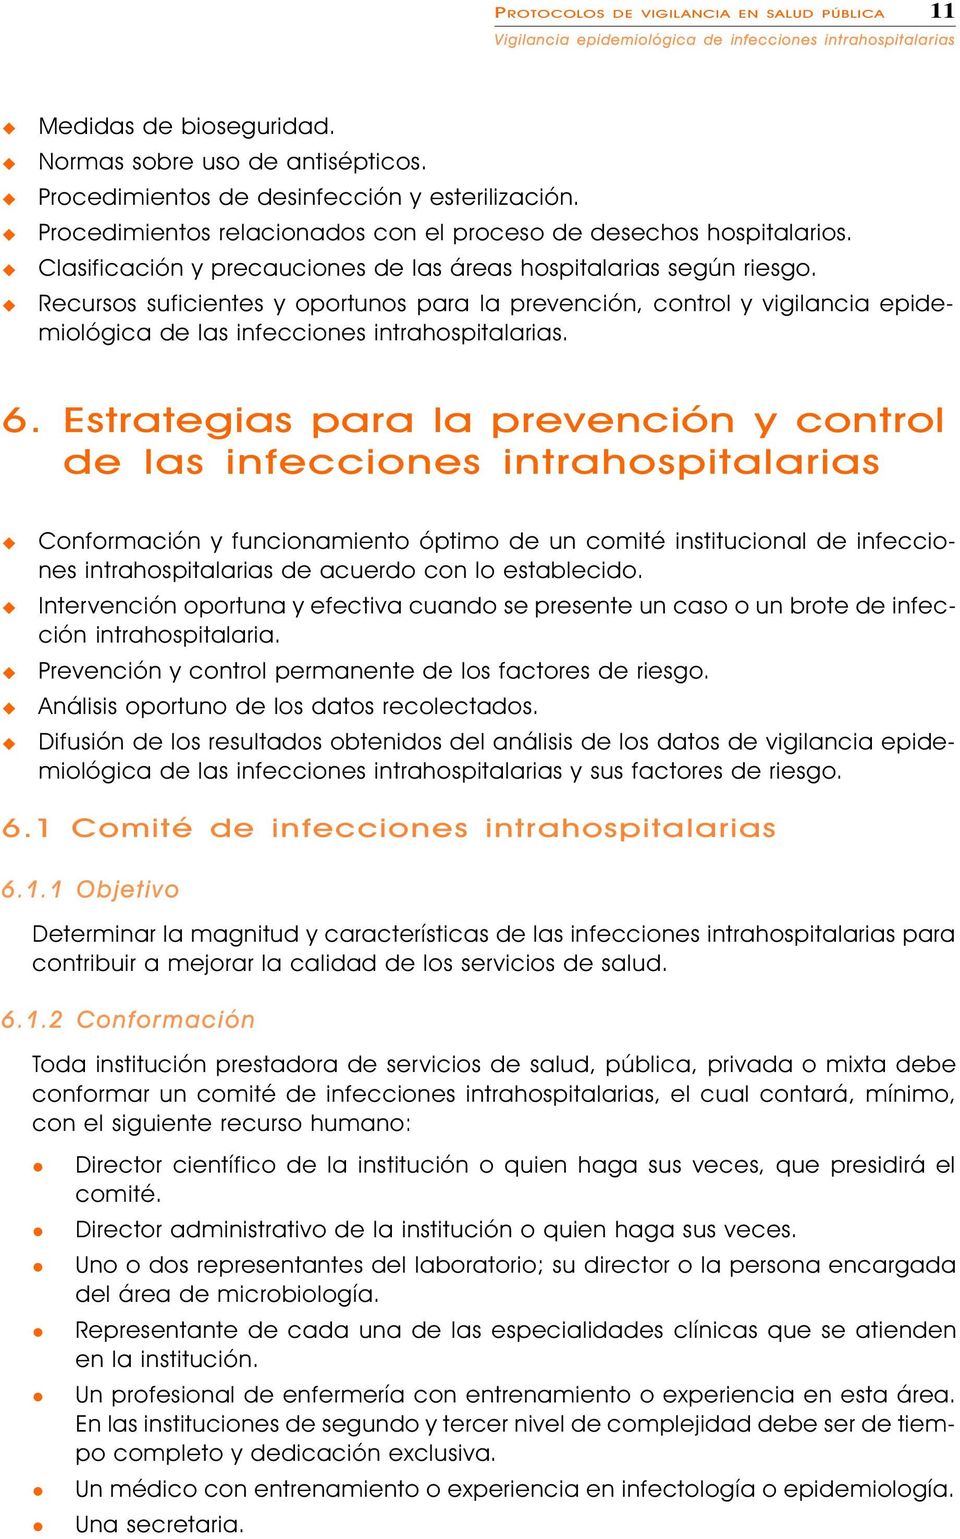 Recrsos sficientes y oportnos para a prevención, contro y vigiancia epidemioógica de as infecciones intrahospitaarias. 6.